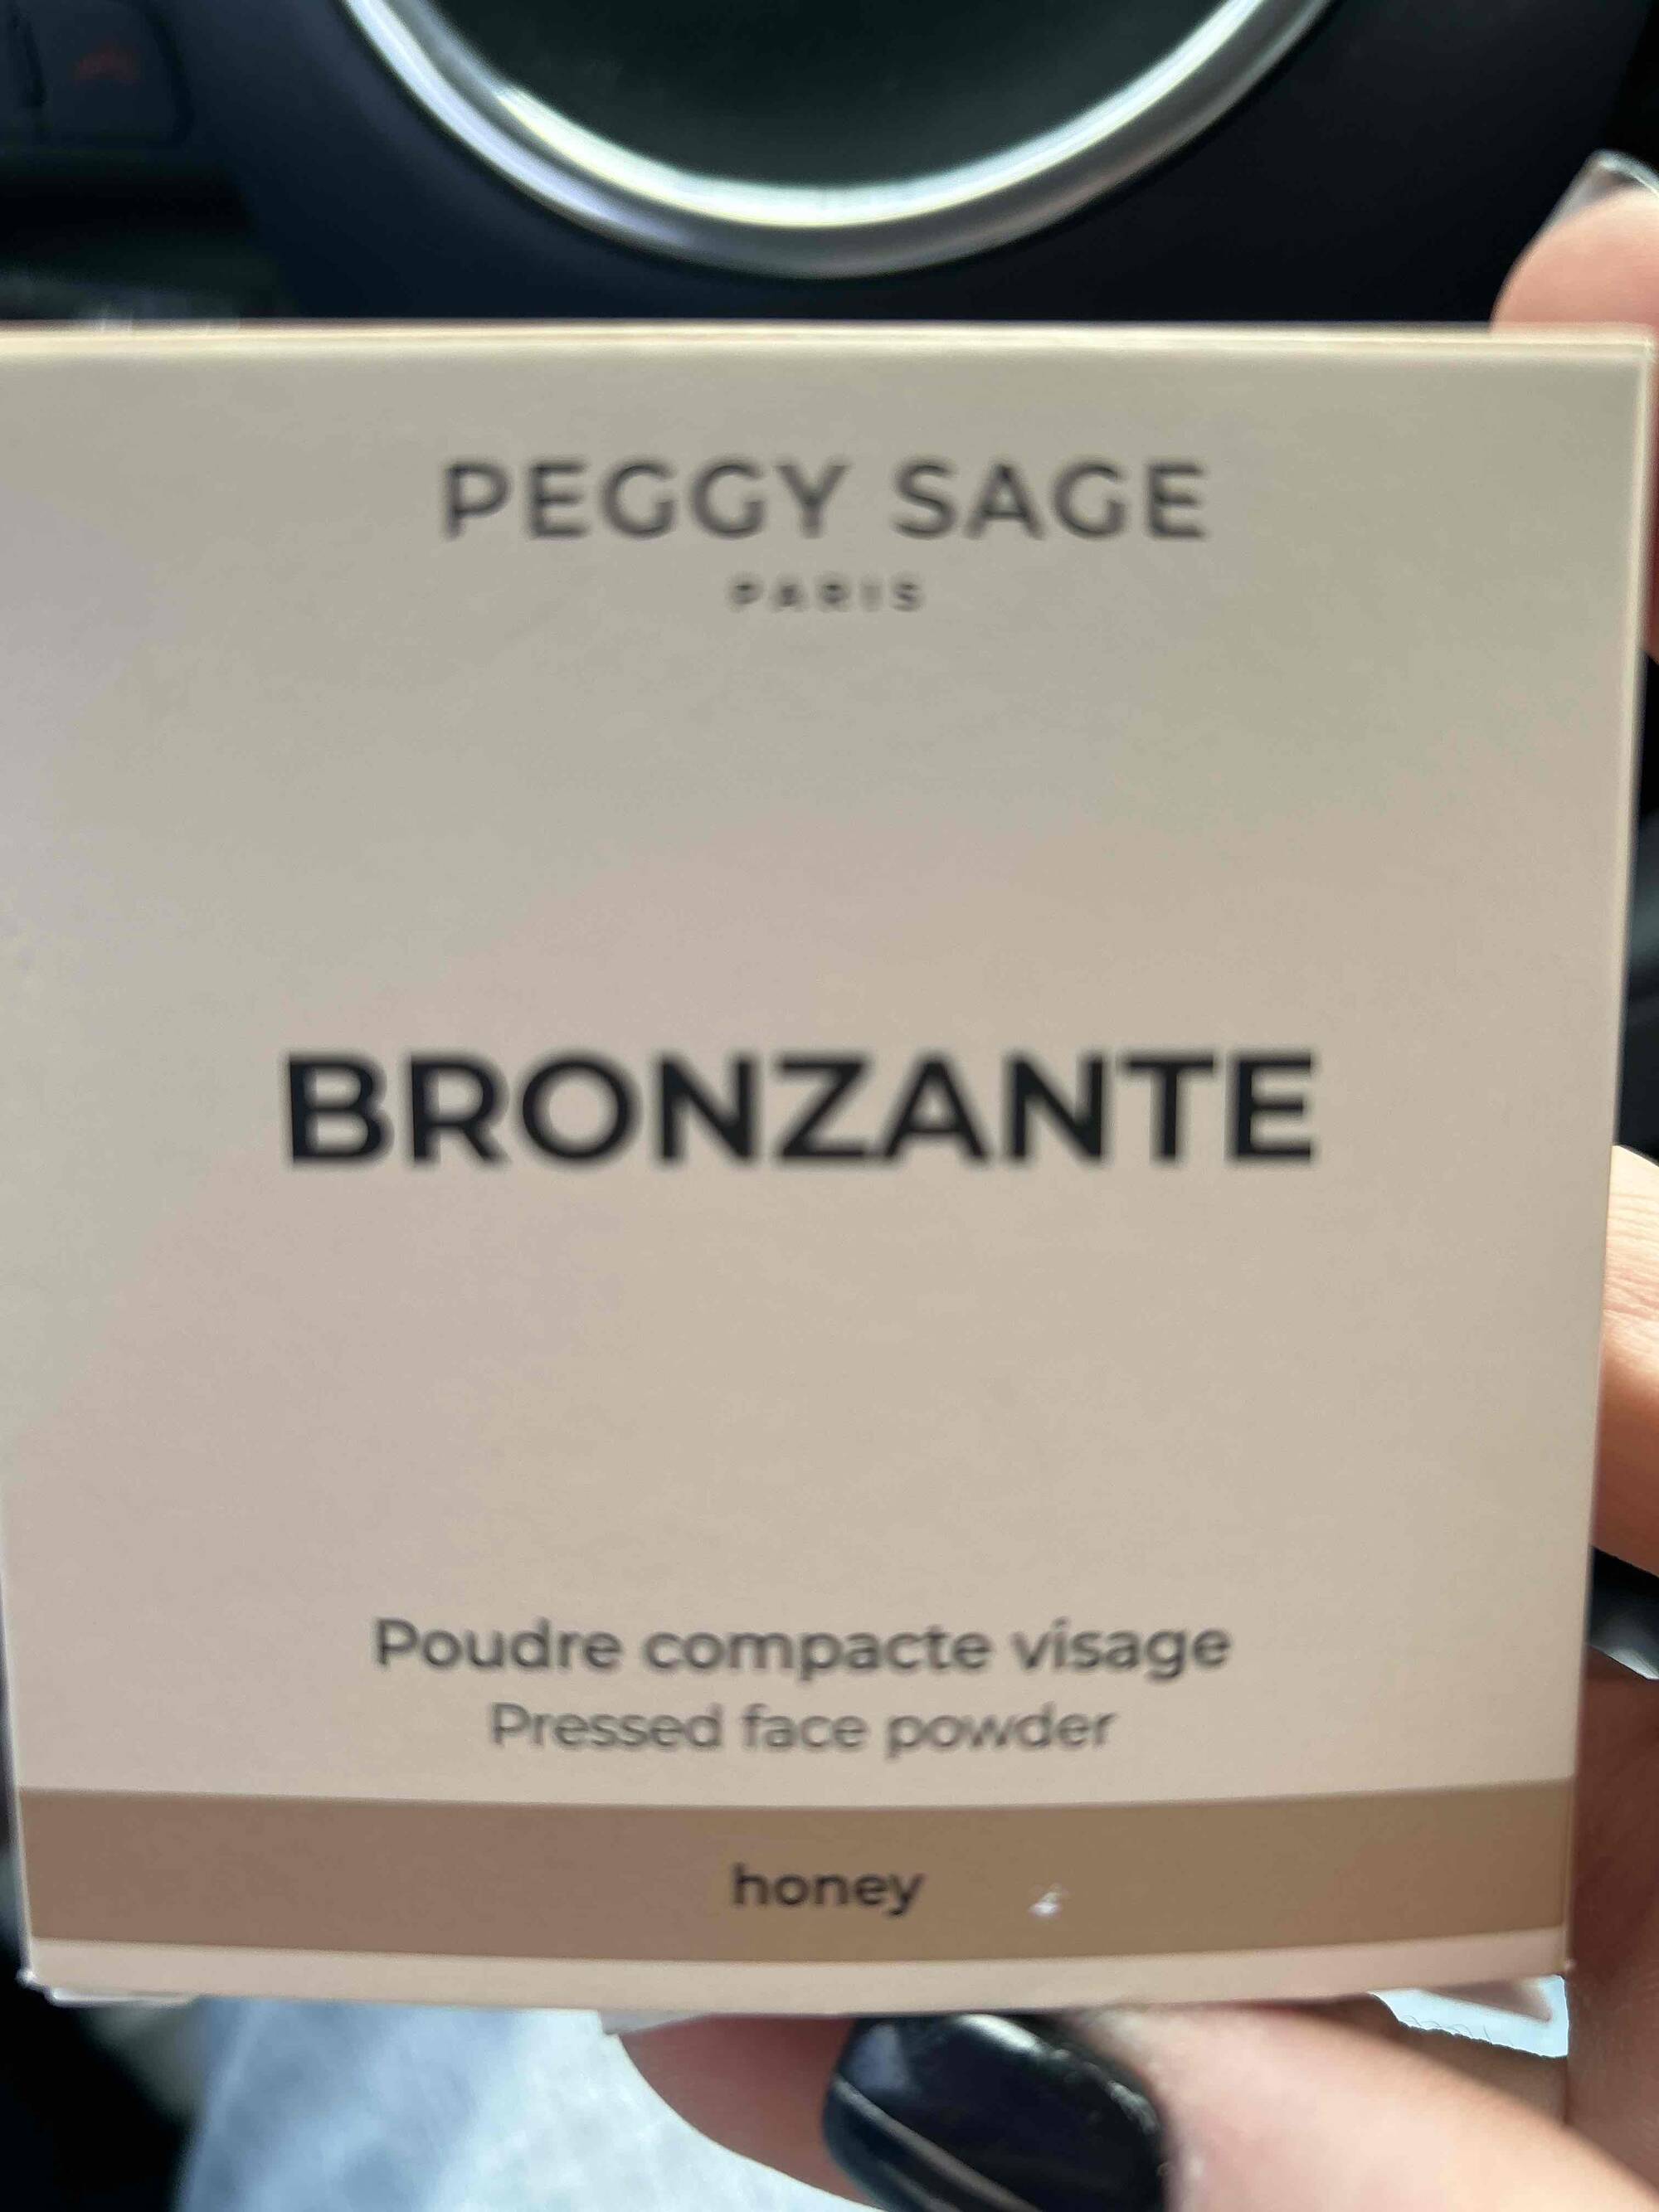 PEGGY SAGE - Bronzante - Poudre compacte visage honey